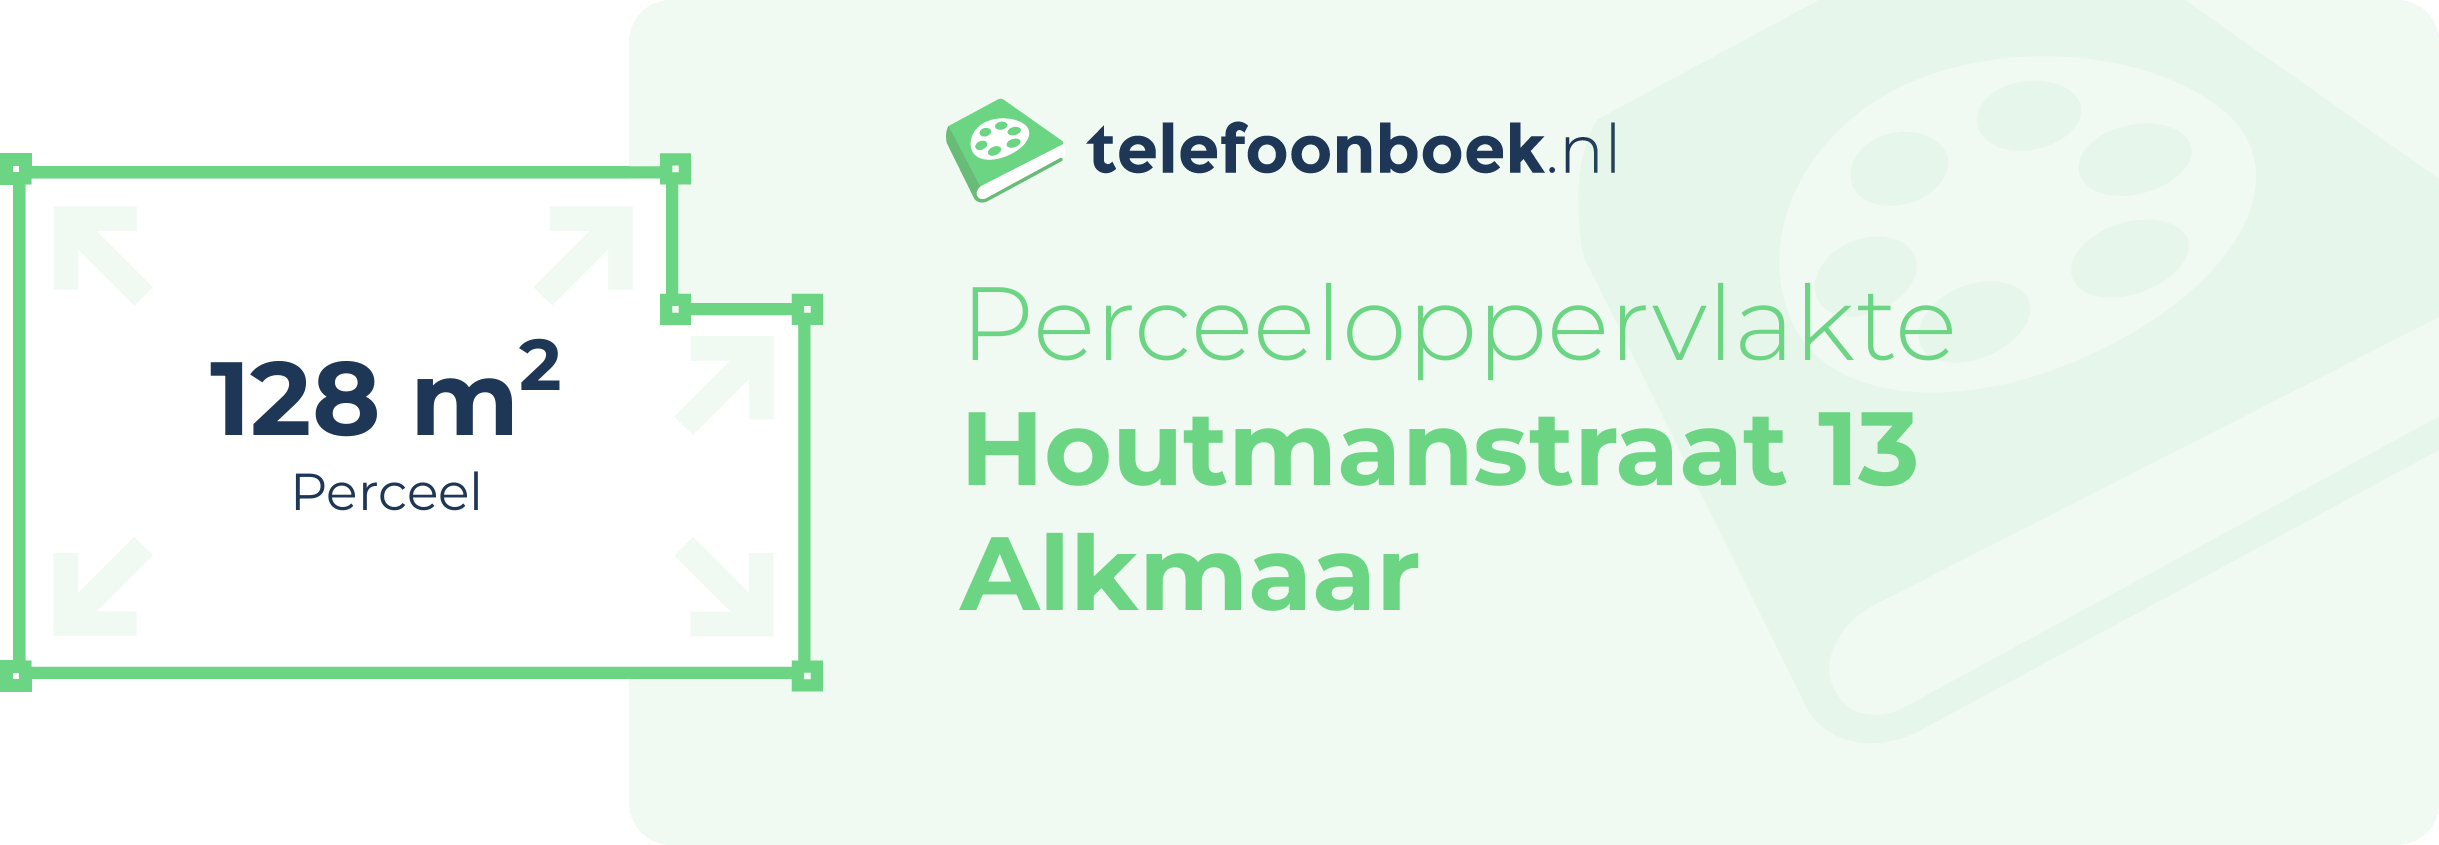 Perceeloppervlakte Houtmanstraat 13 Alkmaar